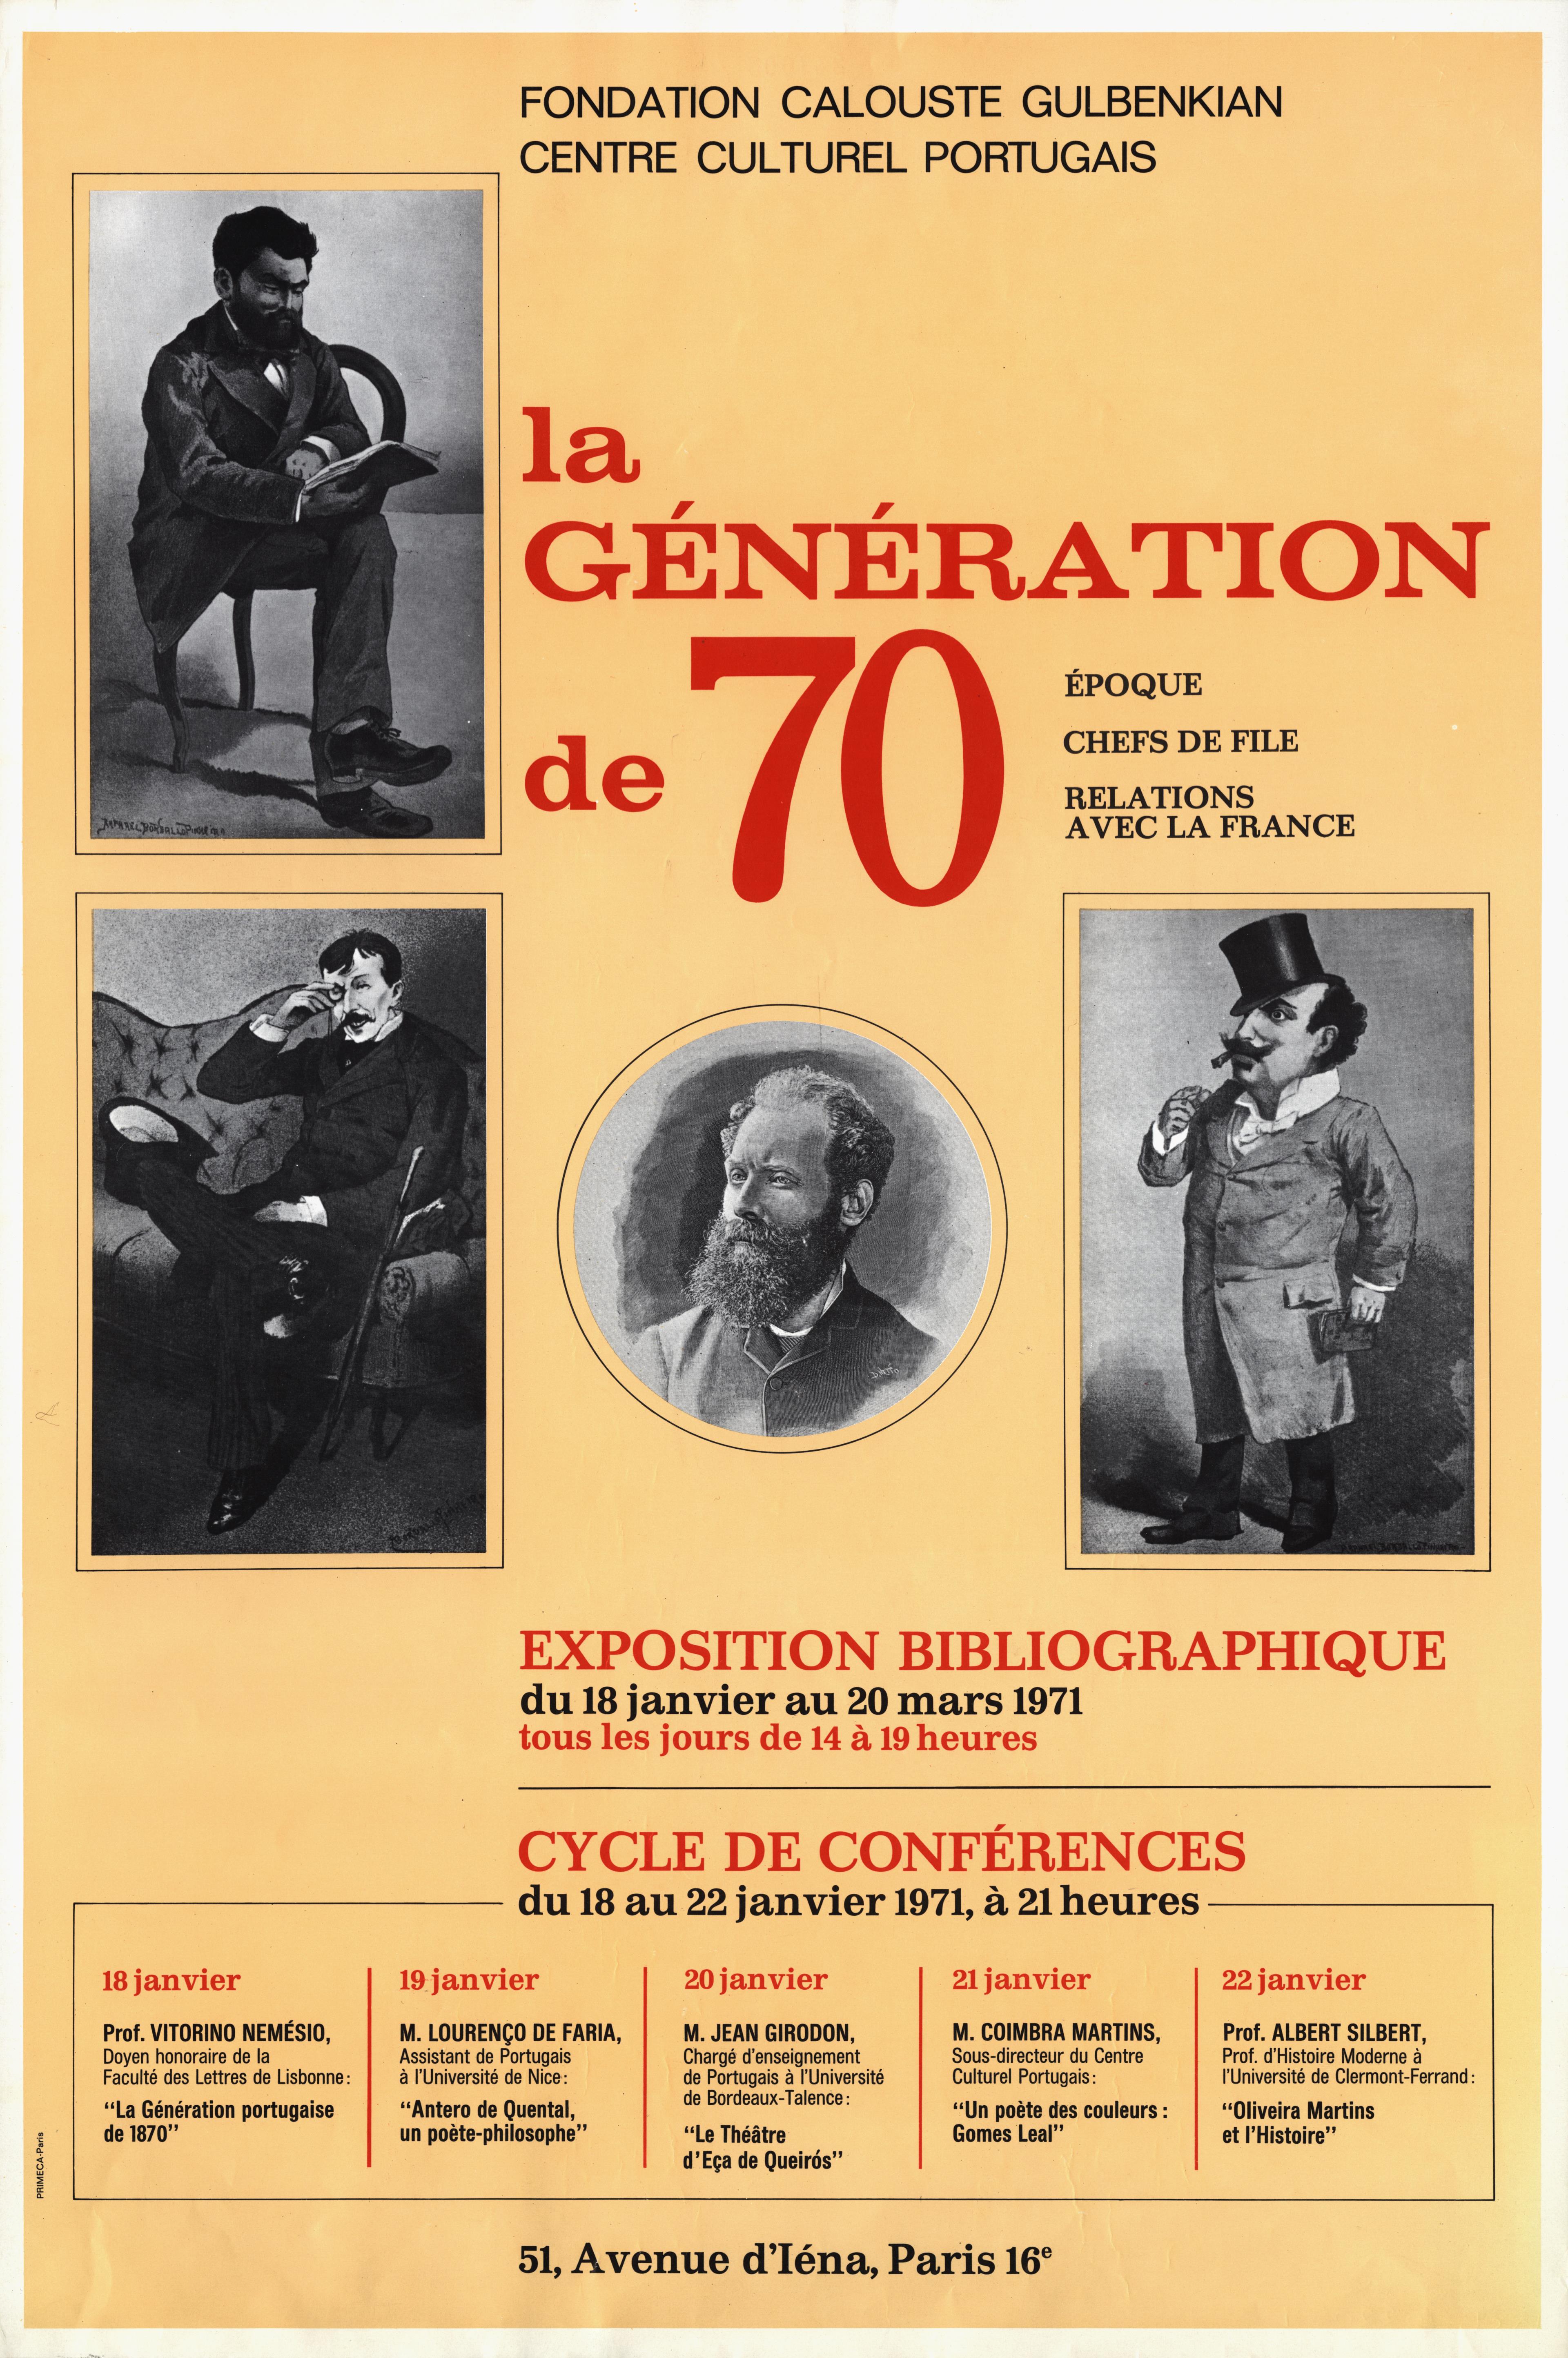 La Géneration de 70. Époque, Chefs de File, Relations avec la France. Exposition Bibliographique